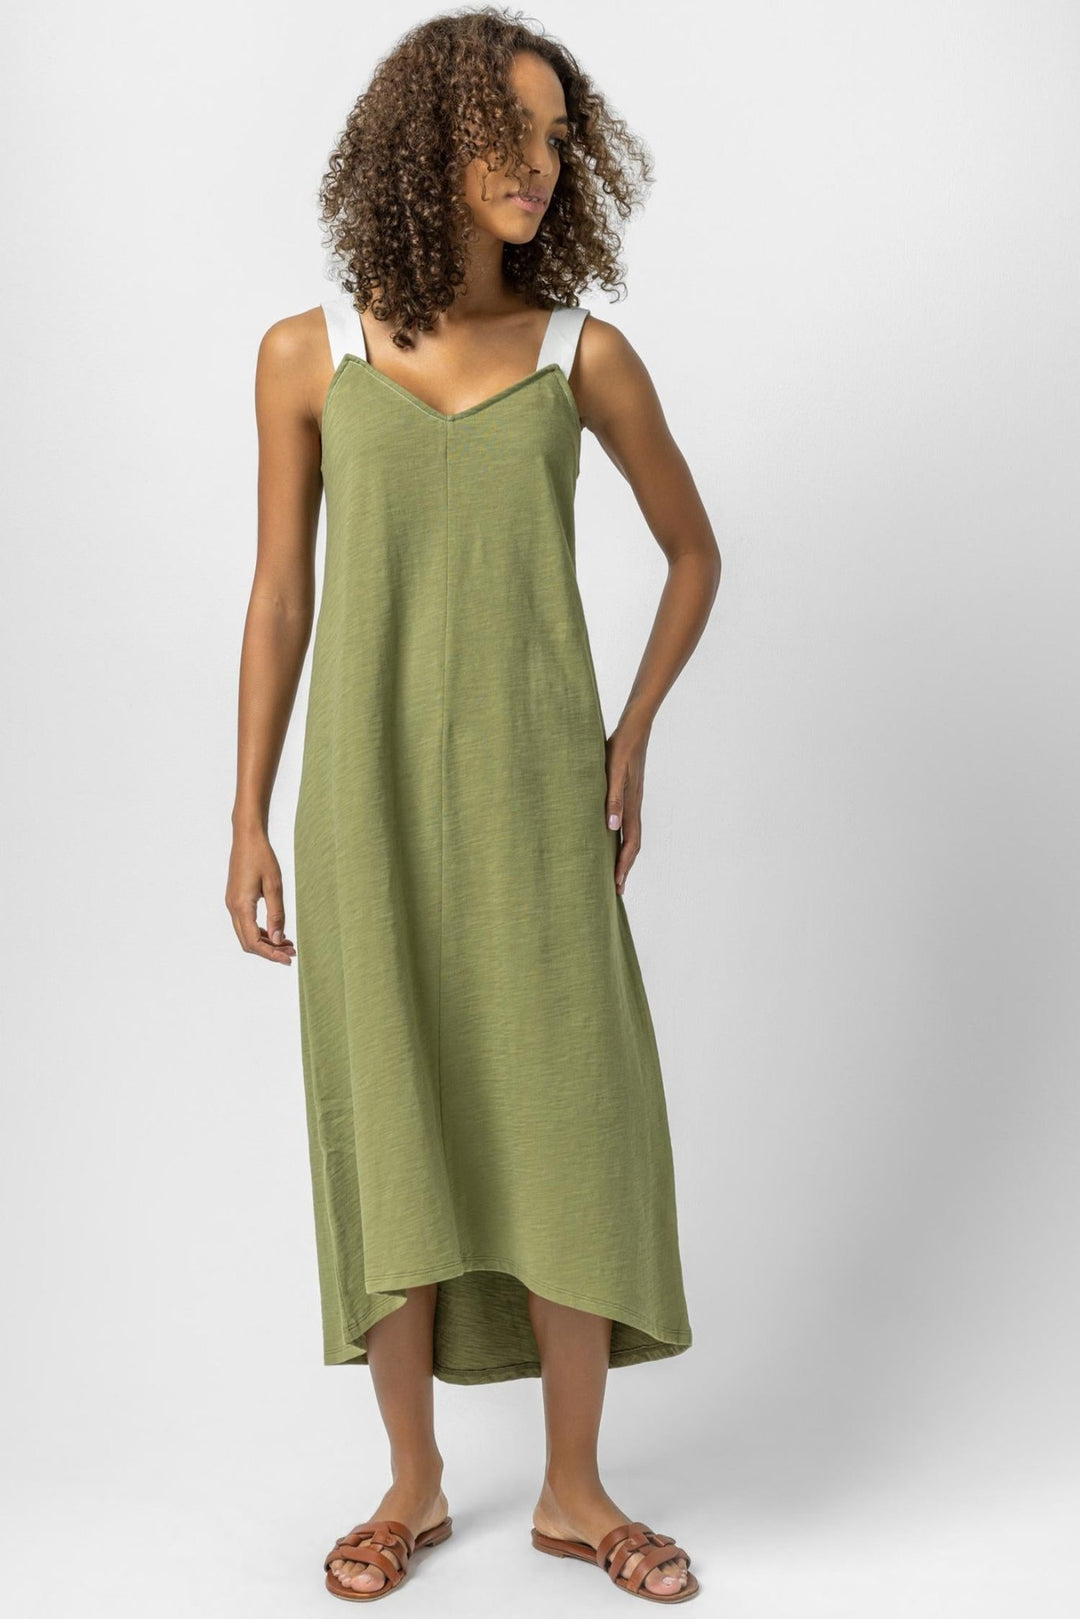 Lilla P - Contrast Strap Tank Dress: Dill - Shorely Chic Boutique